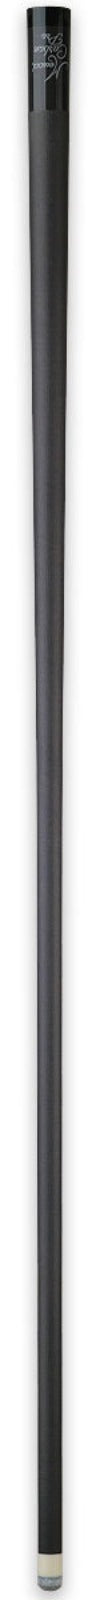 Meucci Meucci Carbon Fiber Pro Shaft - 12.75mm 